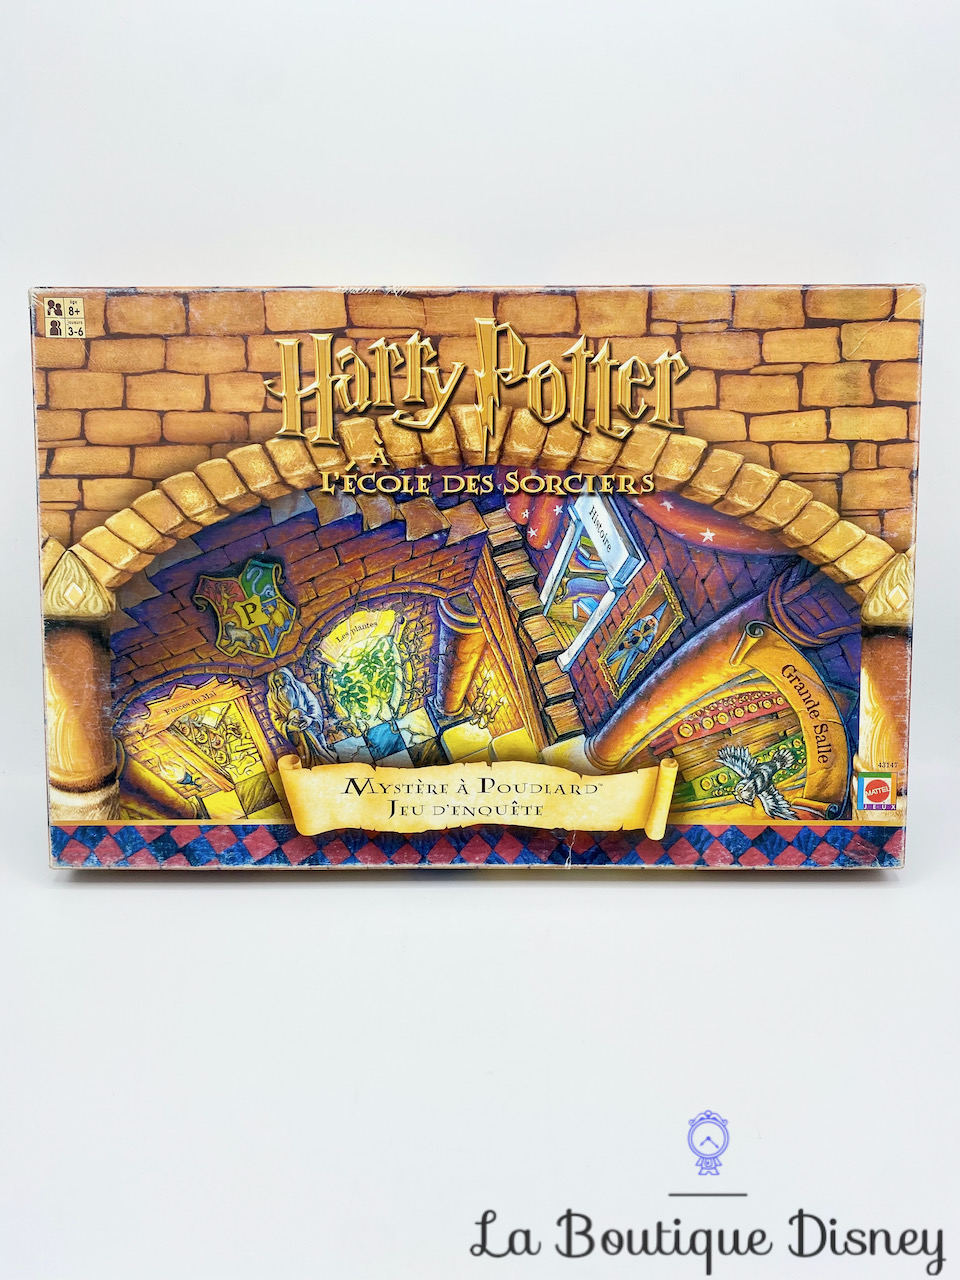 Harry Potter - Une année à Poudlard - Topi Games